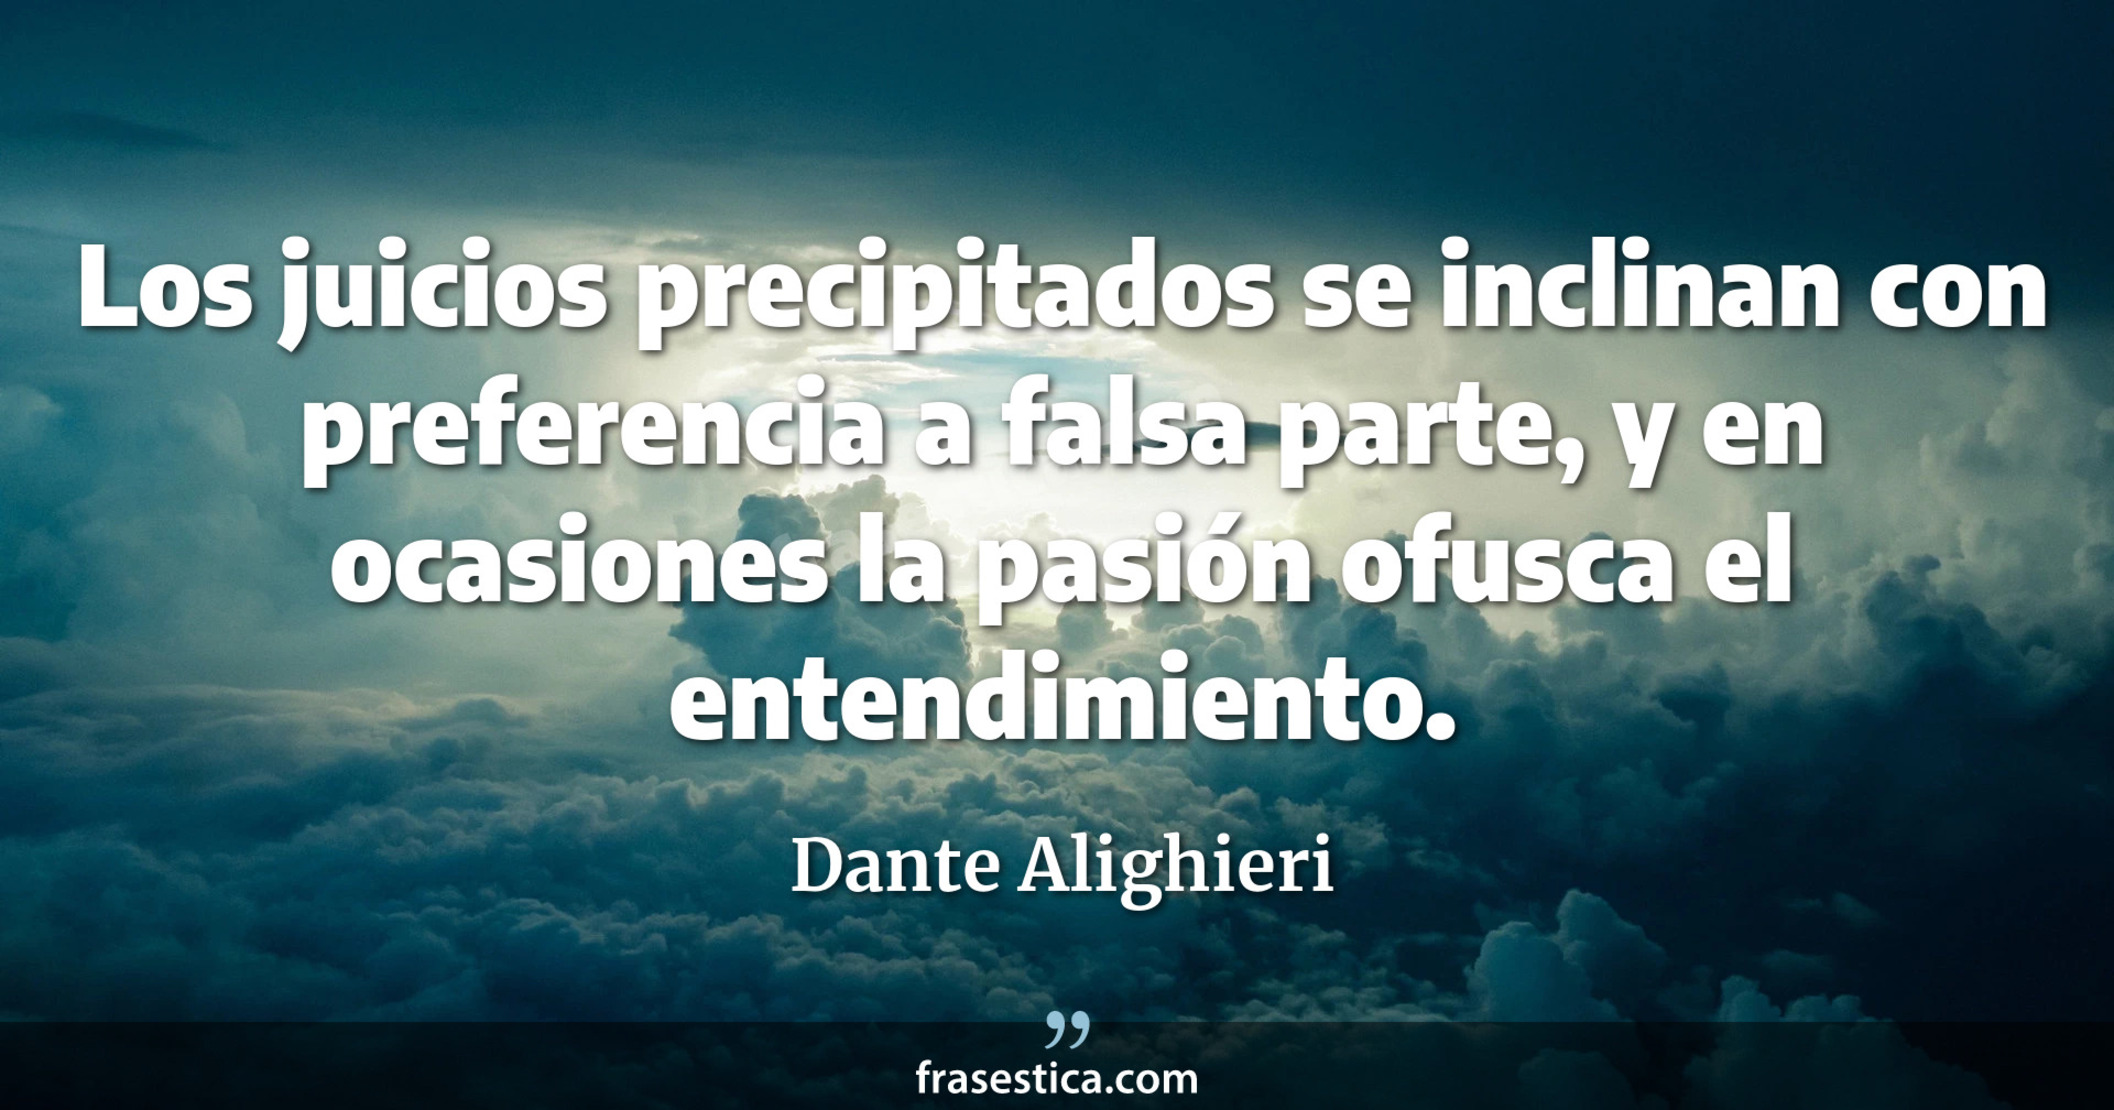 Los juicios precipitados se inclinan con preferencia a falsa parte, y en ocasiones la pasión ofusca el entendimiento. - Dante Alighieri